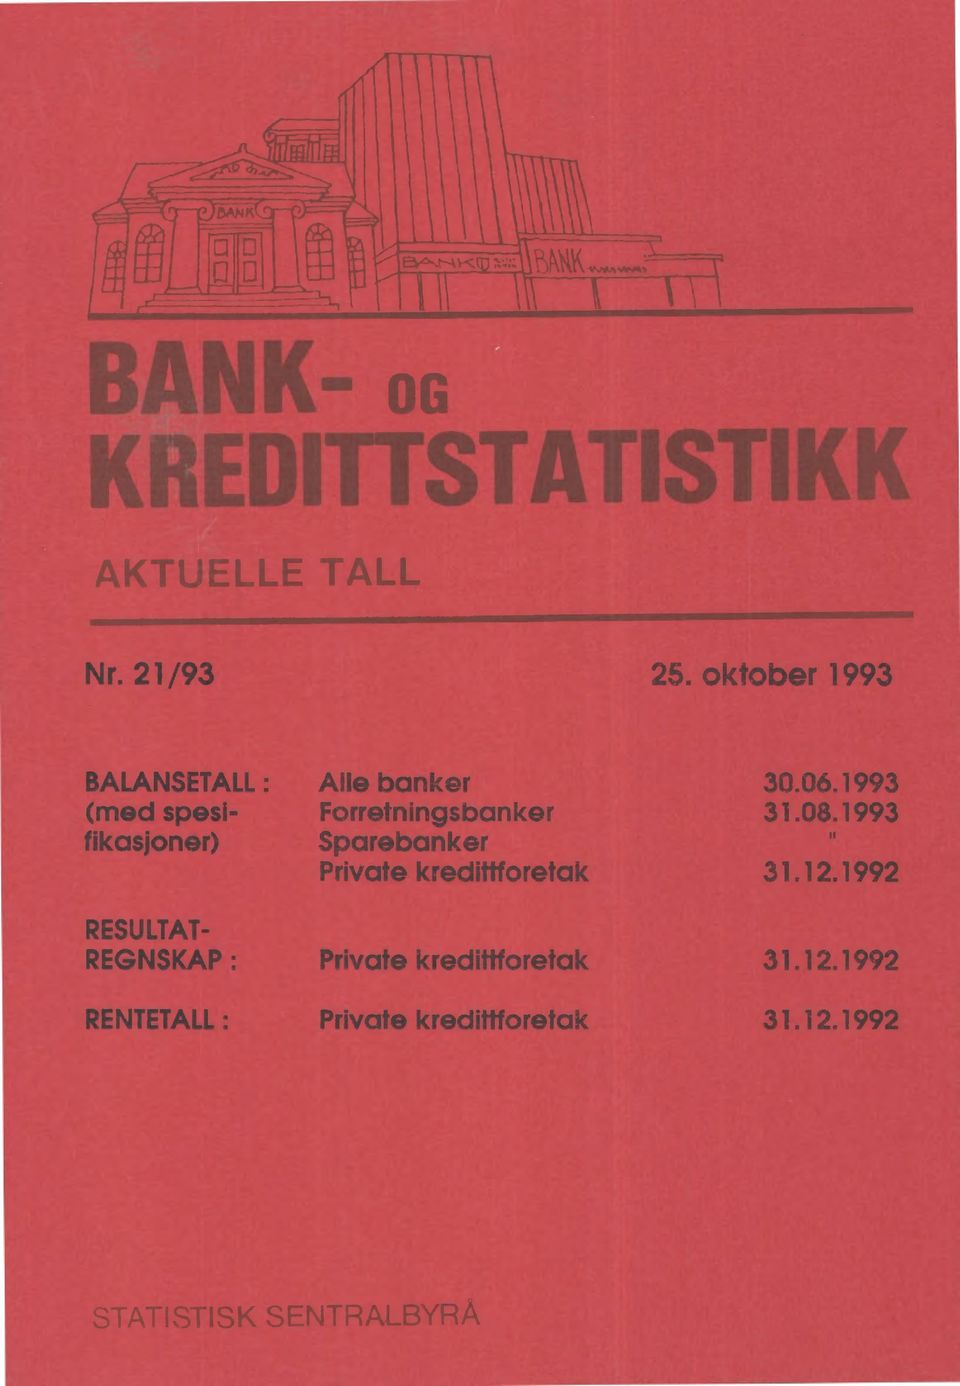 1993 fikasjoner) Sparebanker Private kredittforetak.